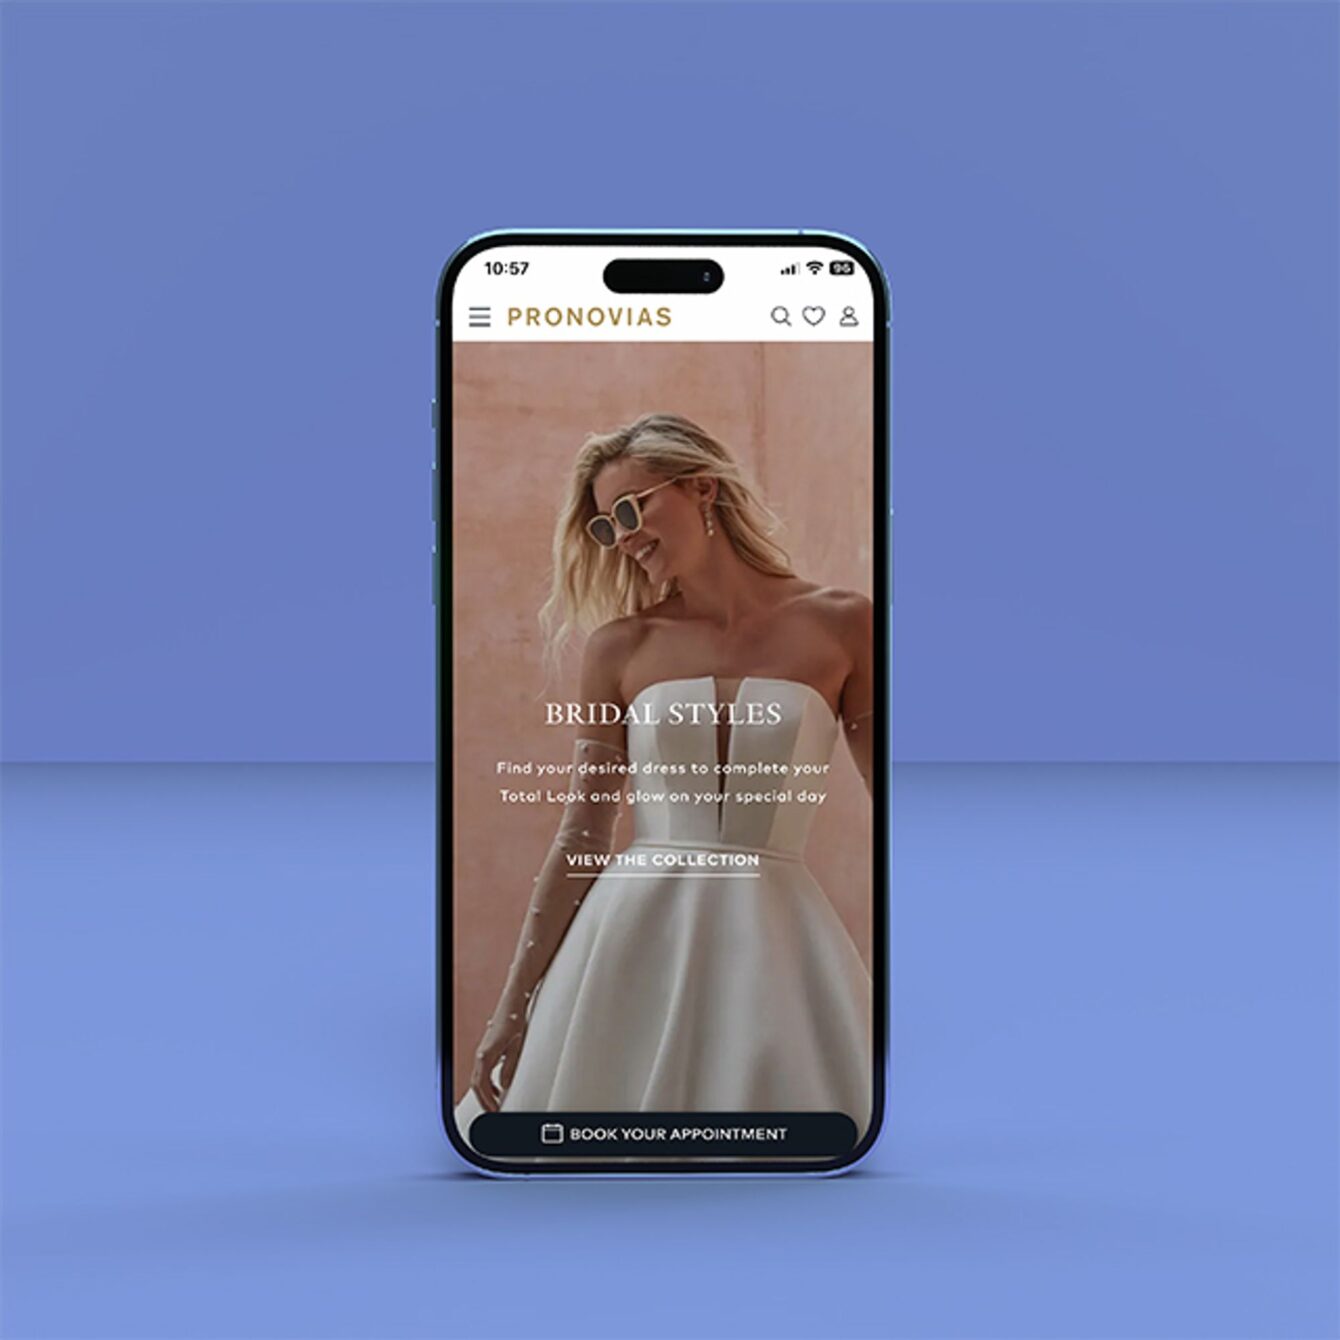 Pronovias image of bridal wear on phone